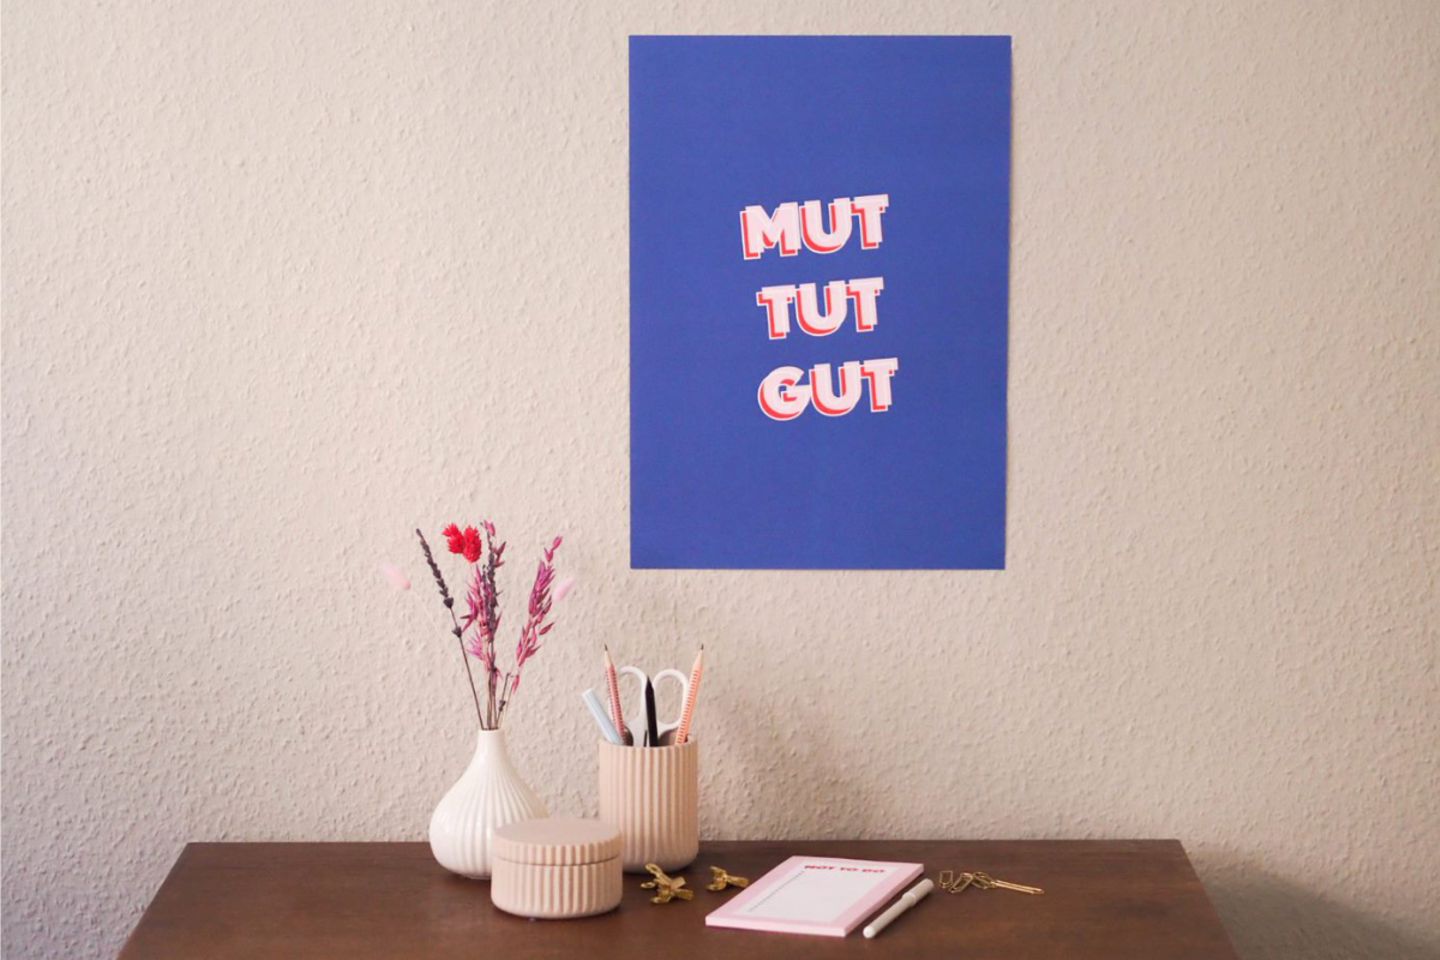 Poster mit Spruch "Mut tut gut" über dem Schreibtisch